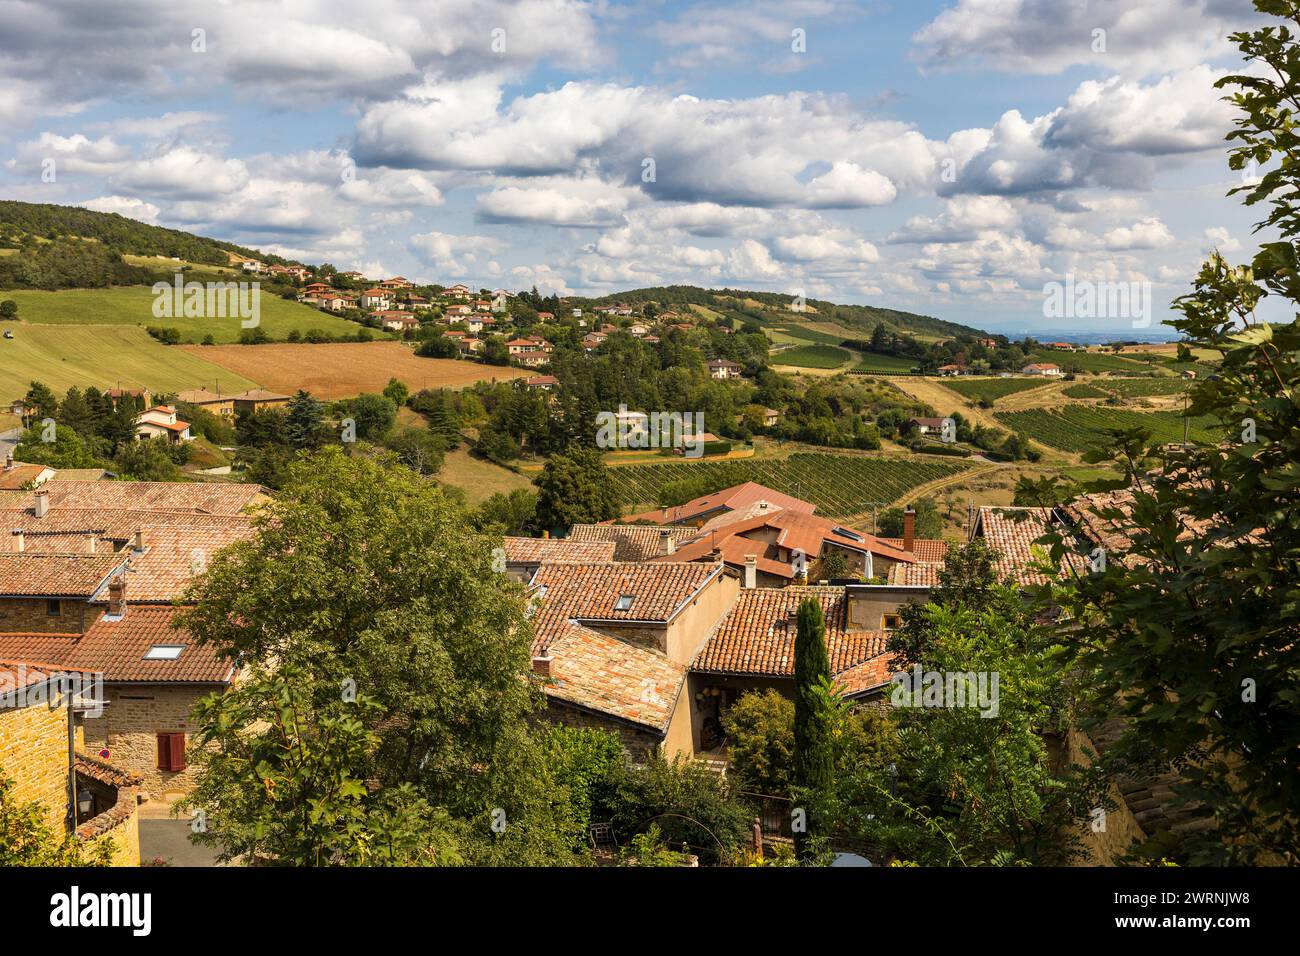 Village médiéval d’Oingt construit en pierres dorées typique de cette région du Beaujolais dominant un paysage de collines et de vignobles depuis le S. Foto Stock